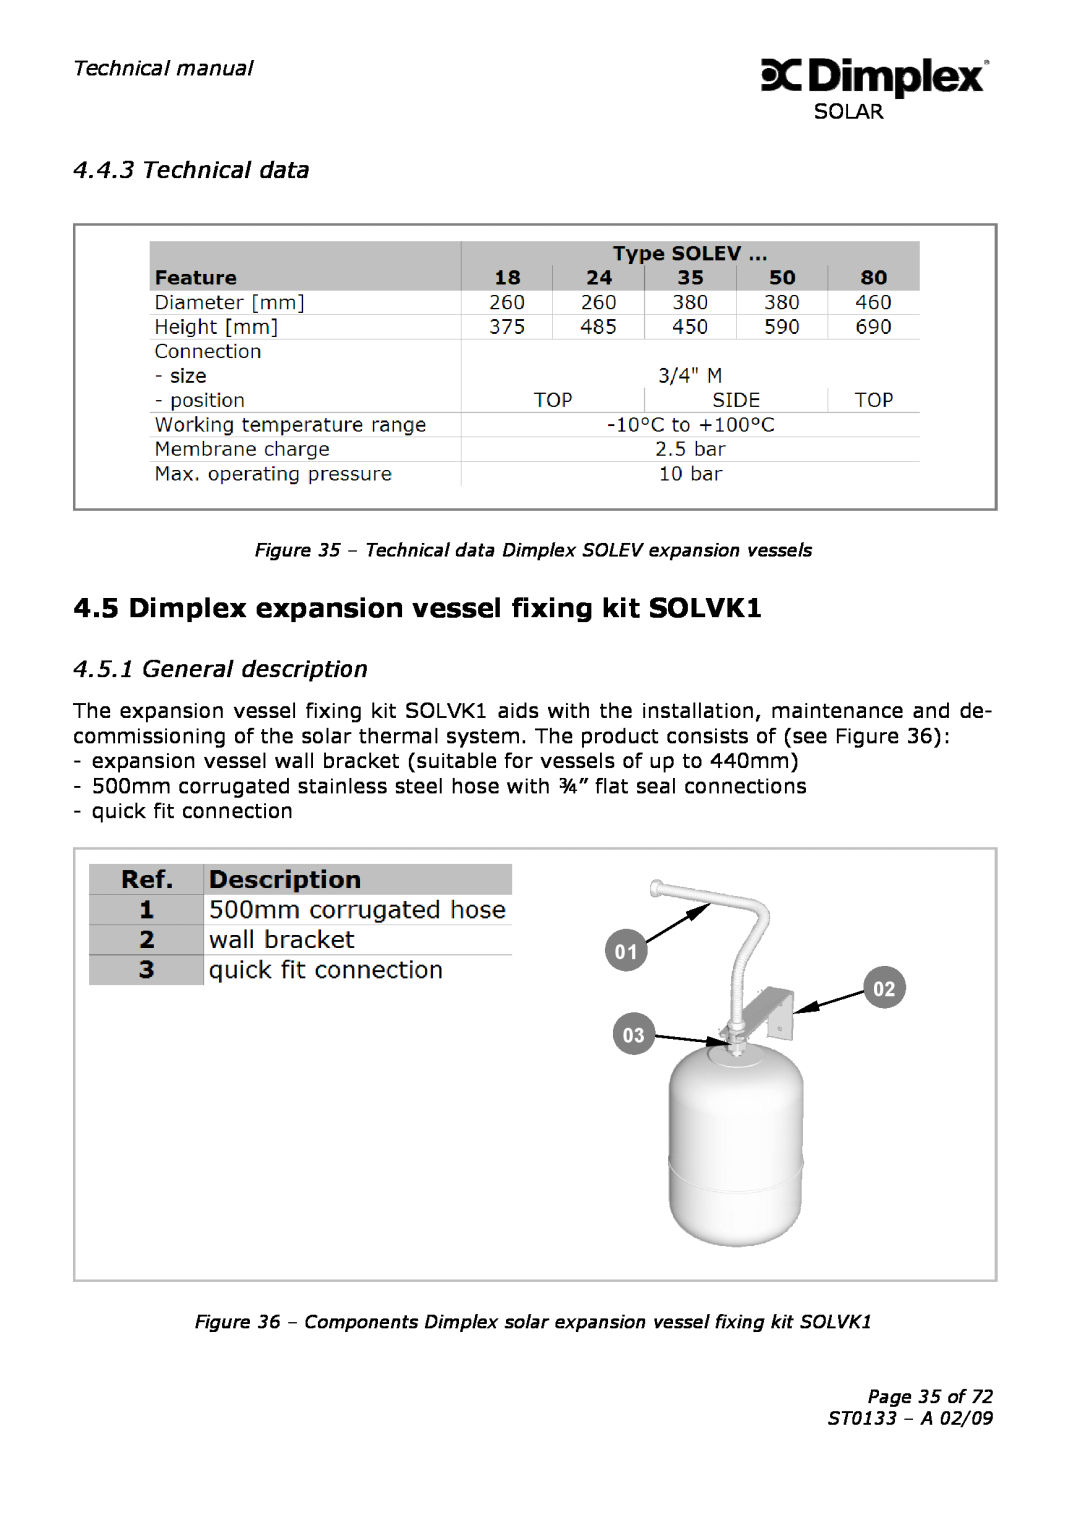 Dimplex ST0133 technical manual Dimplex expansion vessel fixing kit SOLVK1, Technical data, General description 